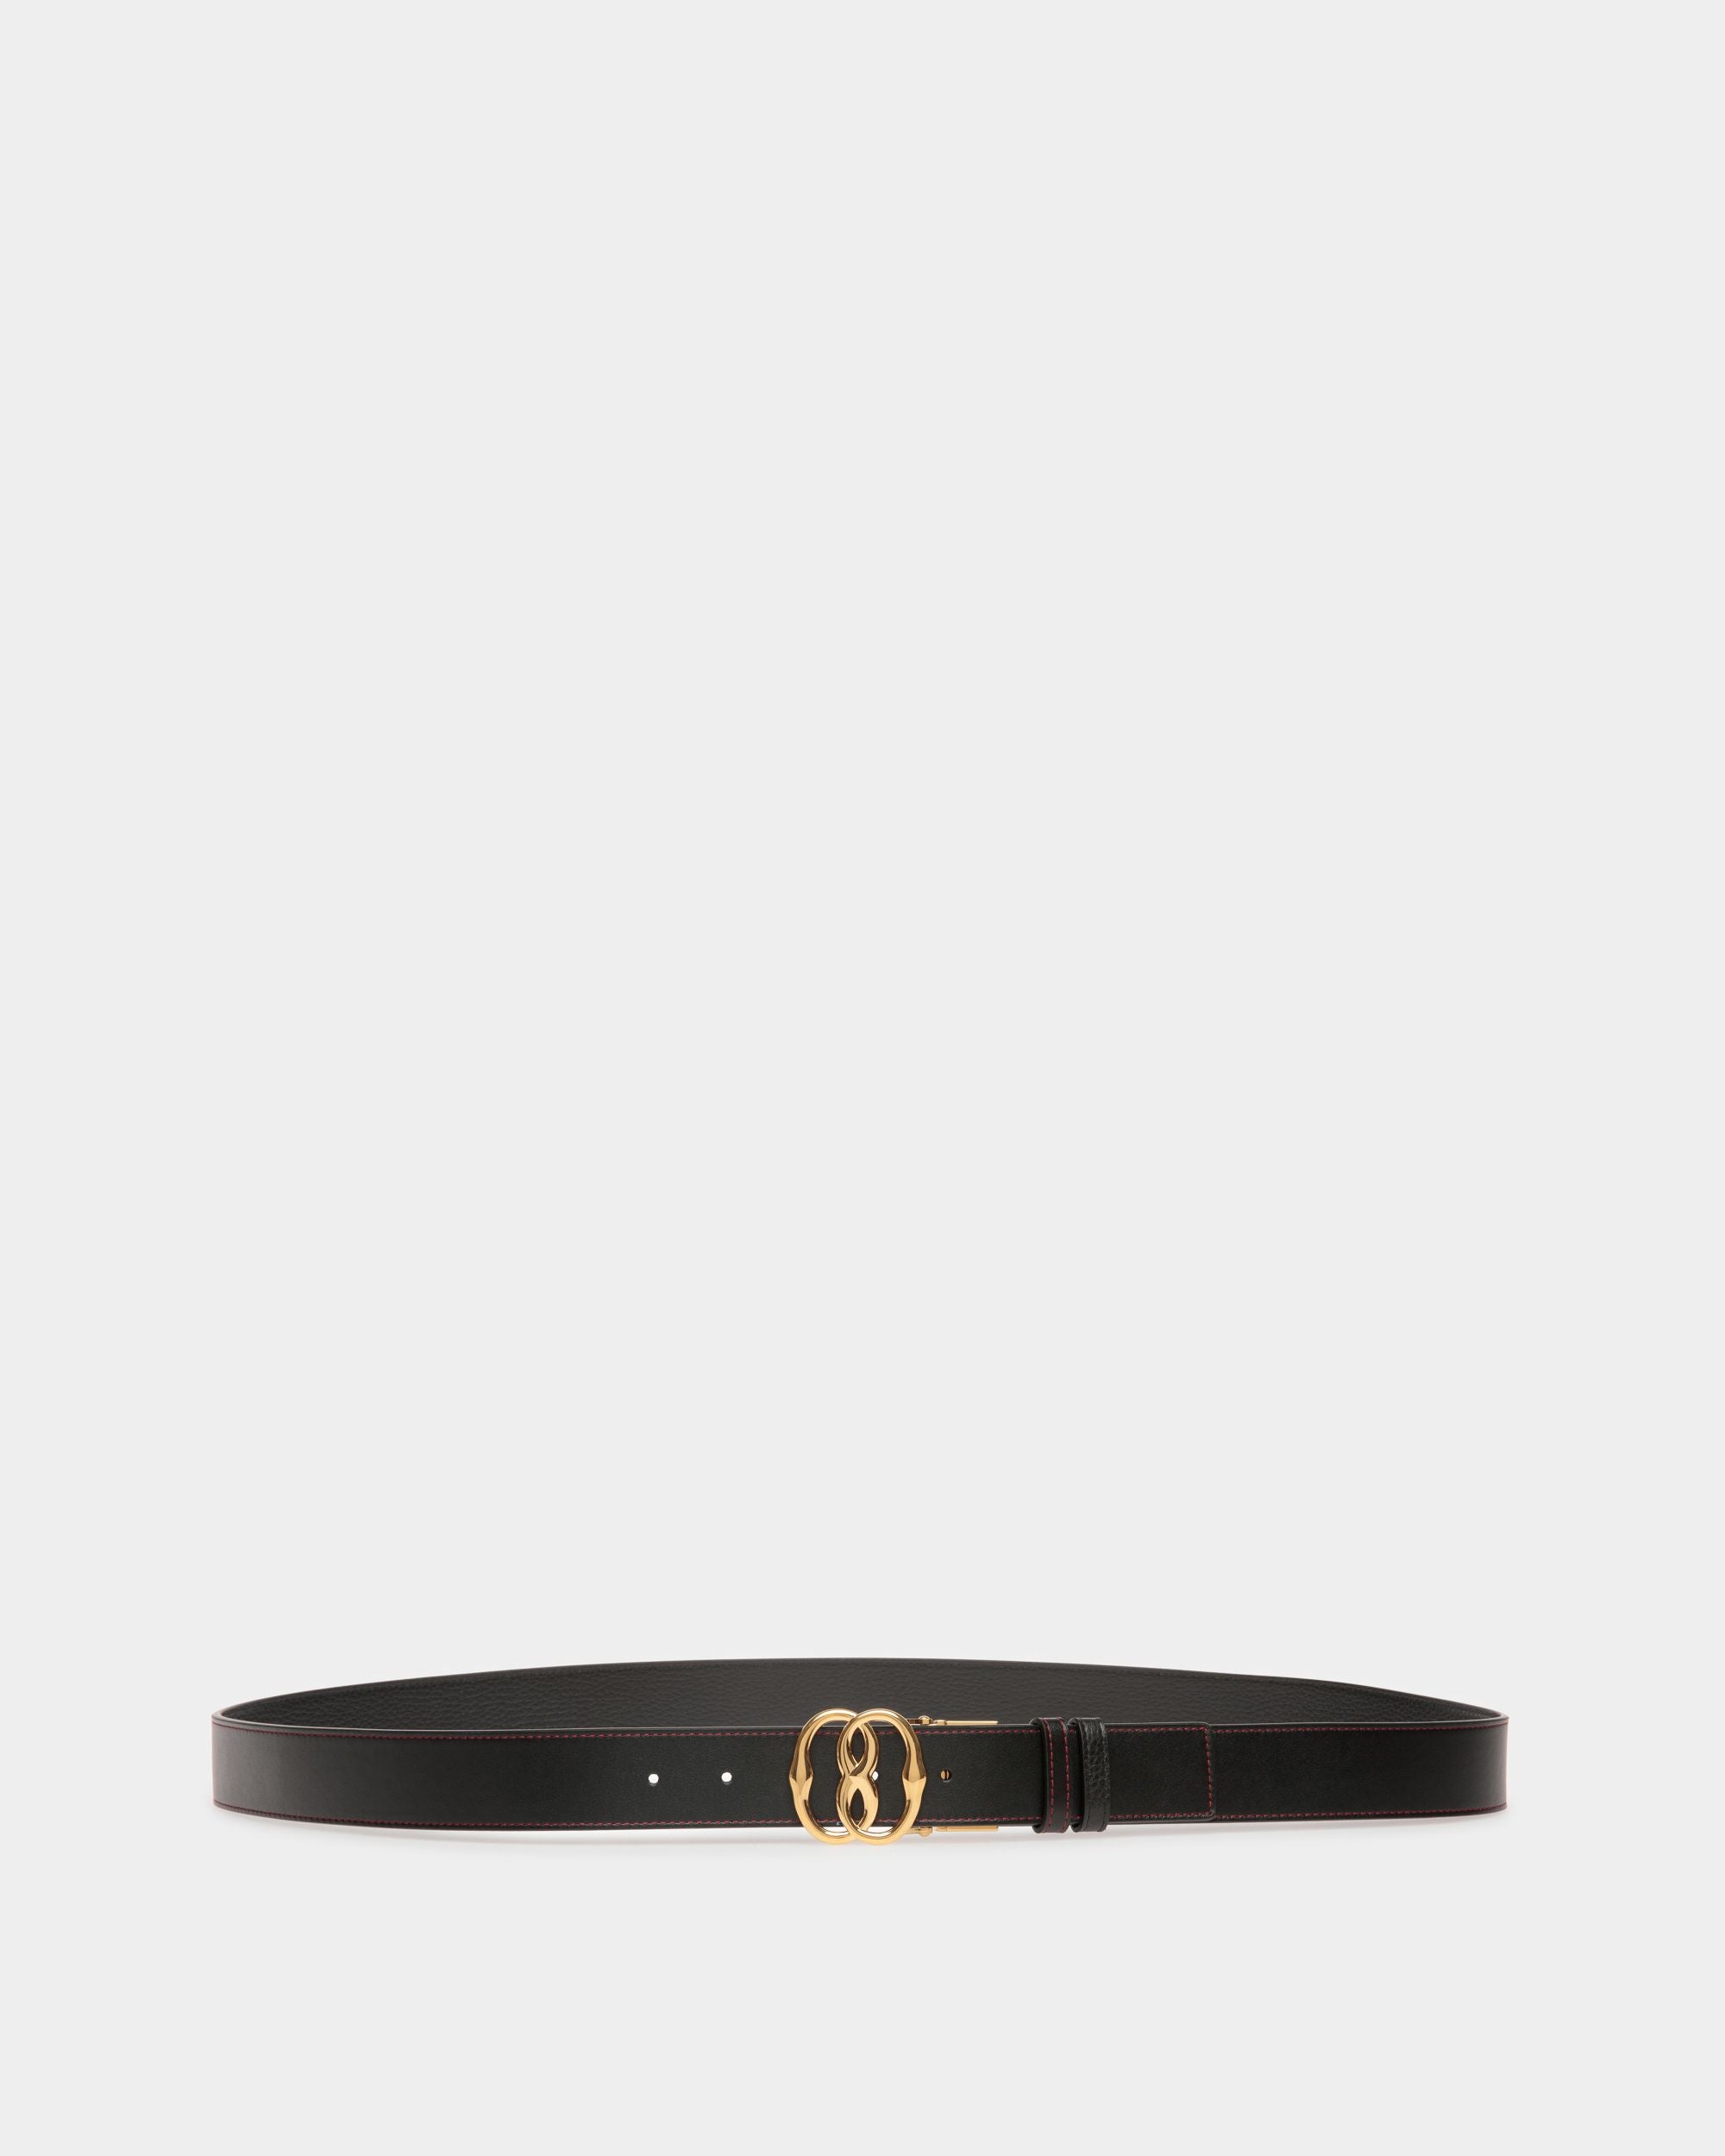 Men's Emblem 35mm Reversible And Adjustable Belt in Black Leather | Bally | Still Life Front